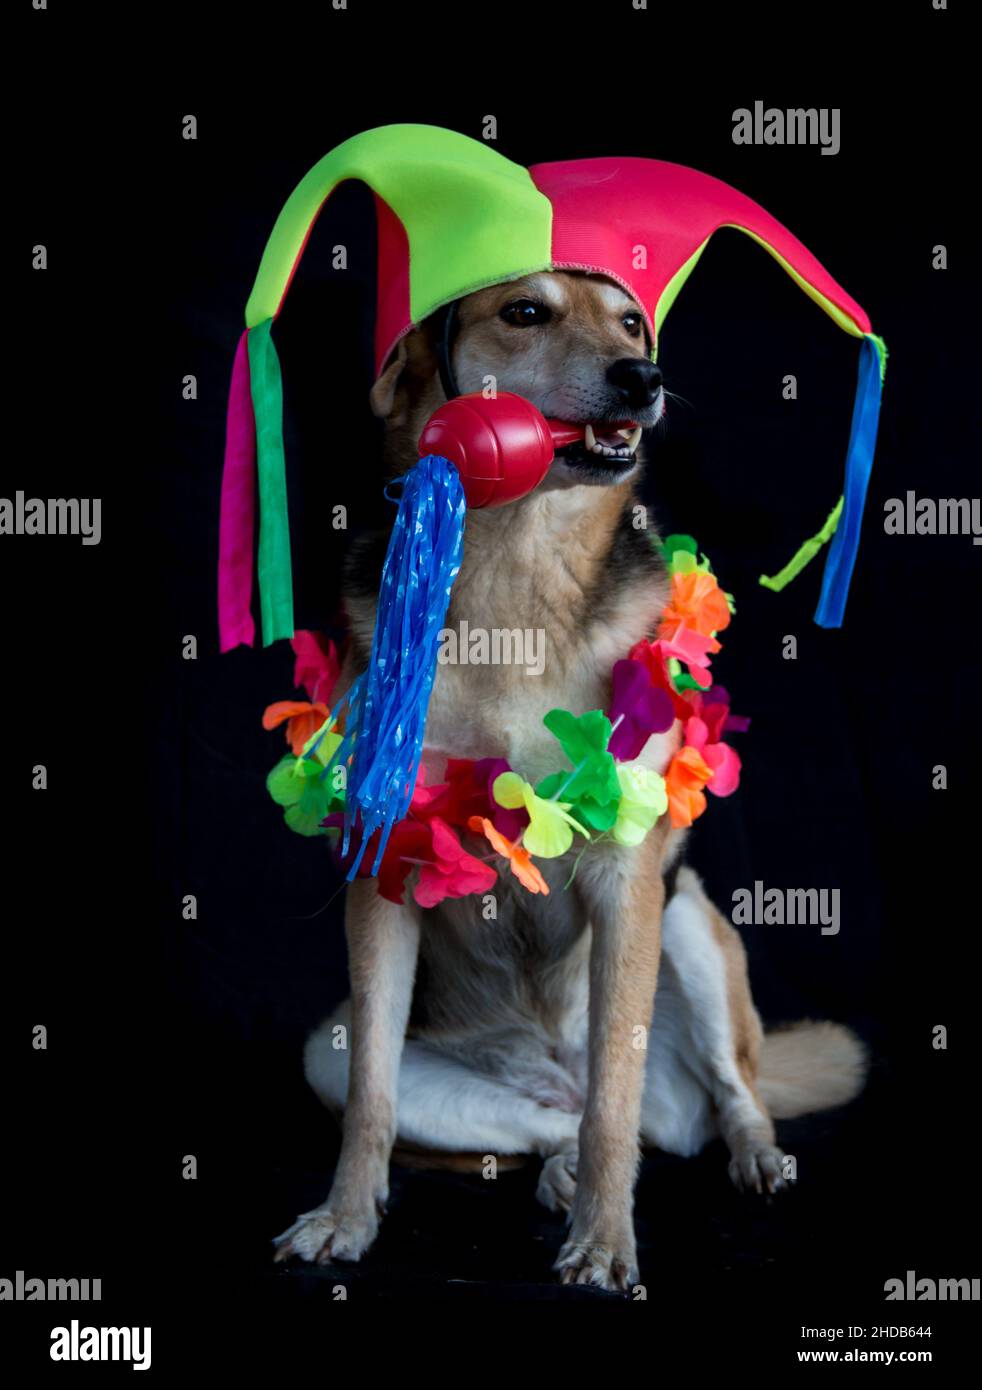 portrait d'un chien mongrel avec chapeau d'arlequin, maracas et collier de fleurs sur fond noir Banque D'Images